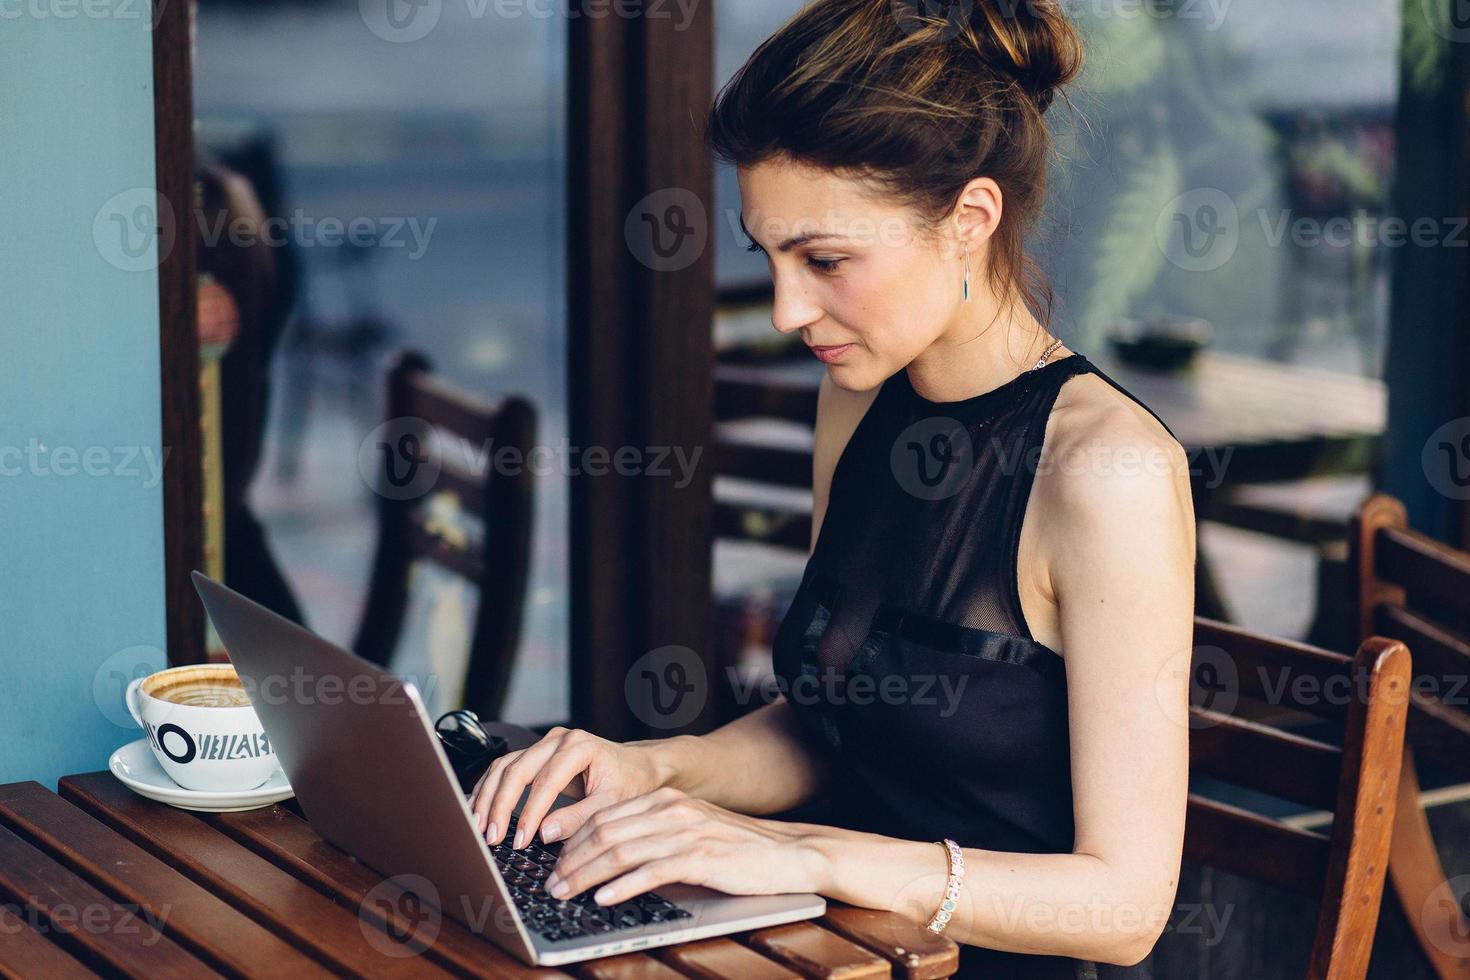 femme d'affaires attrayant travaillant sur son ordinateur portable photo